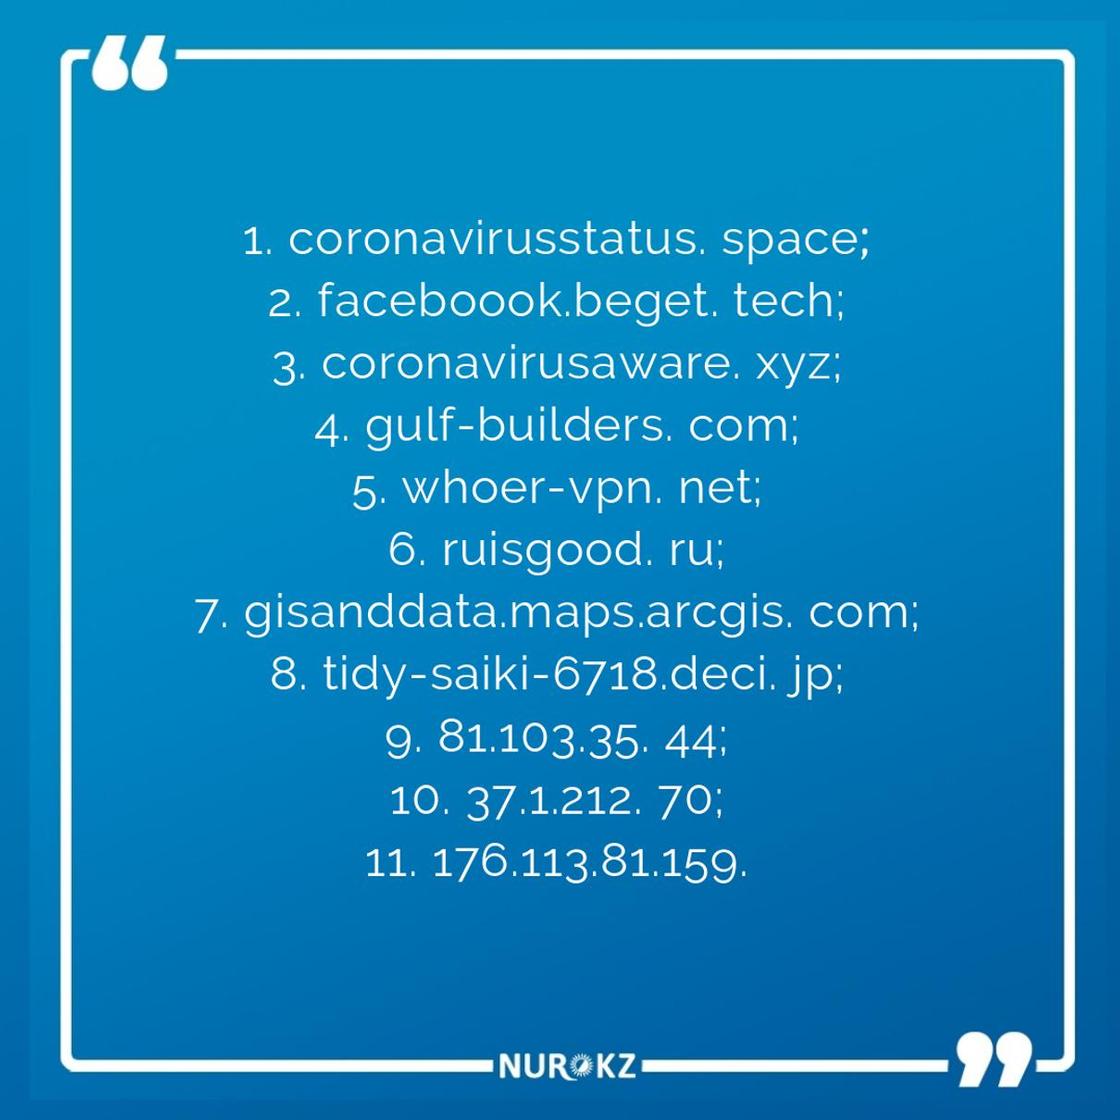 Найден программный вирус "COVID-19" на устройствах казахстанцев